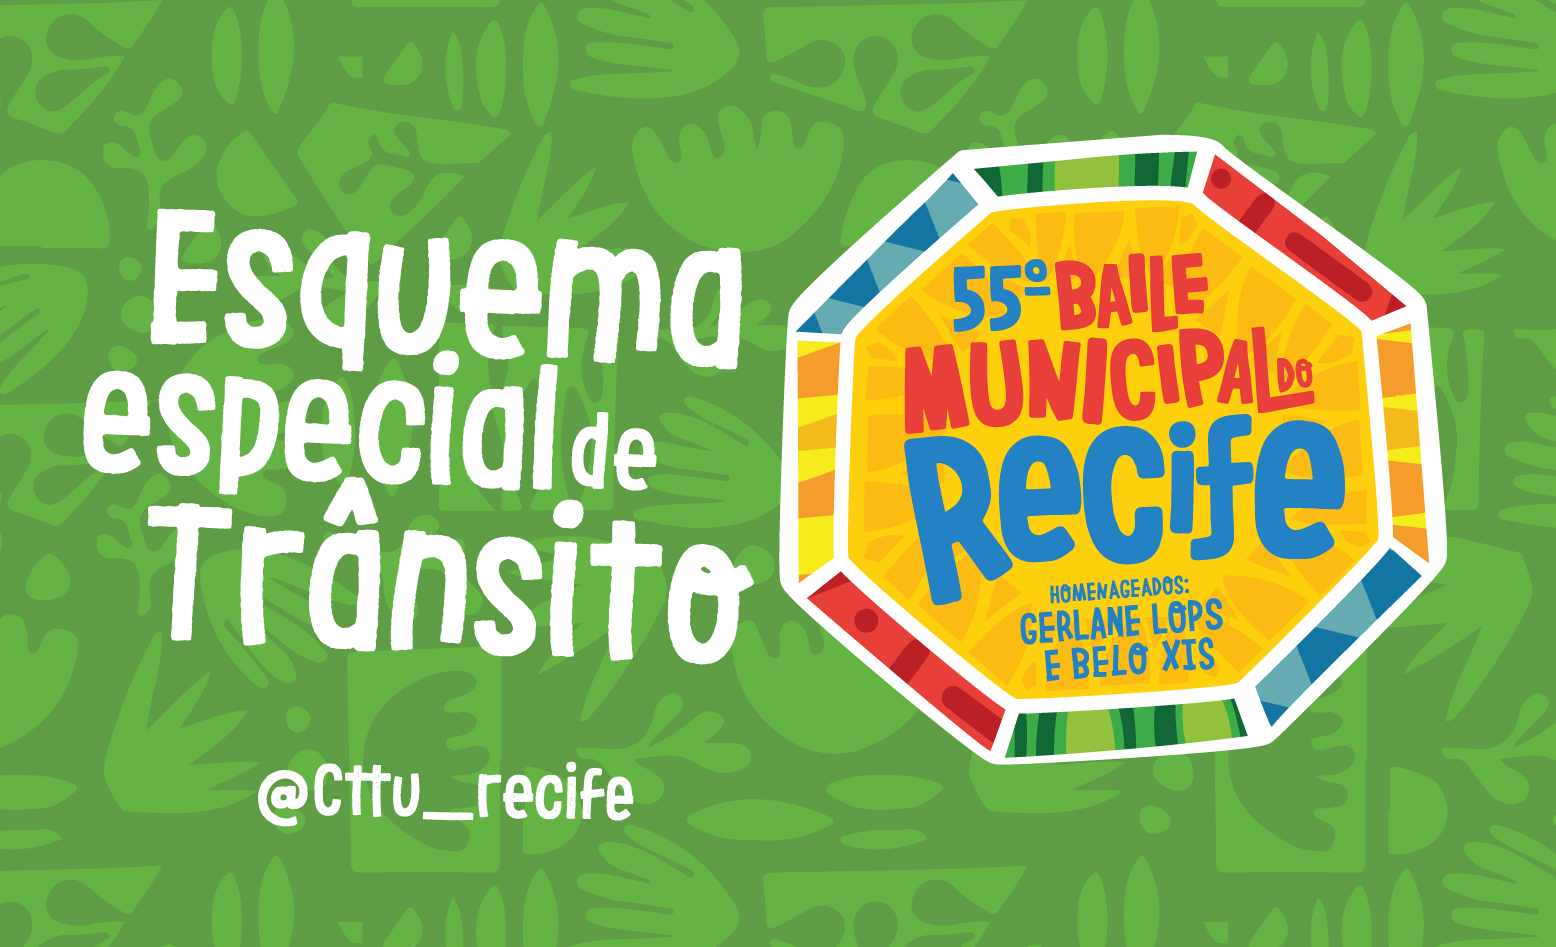 55º Baile Municipal do Recife vai contar com operação especial de trânsito da CTTU